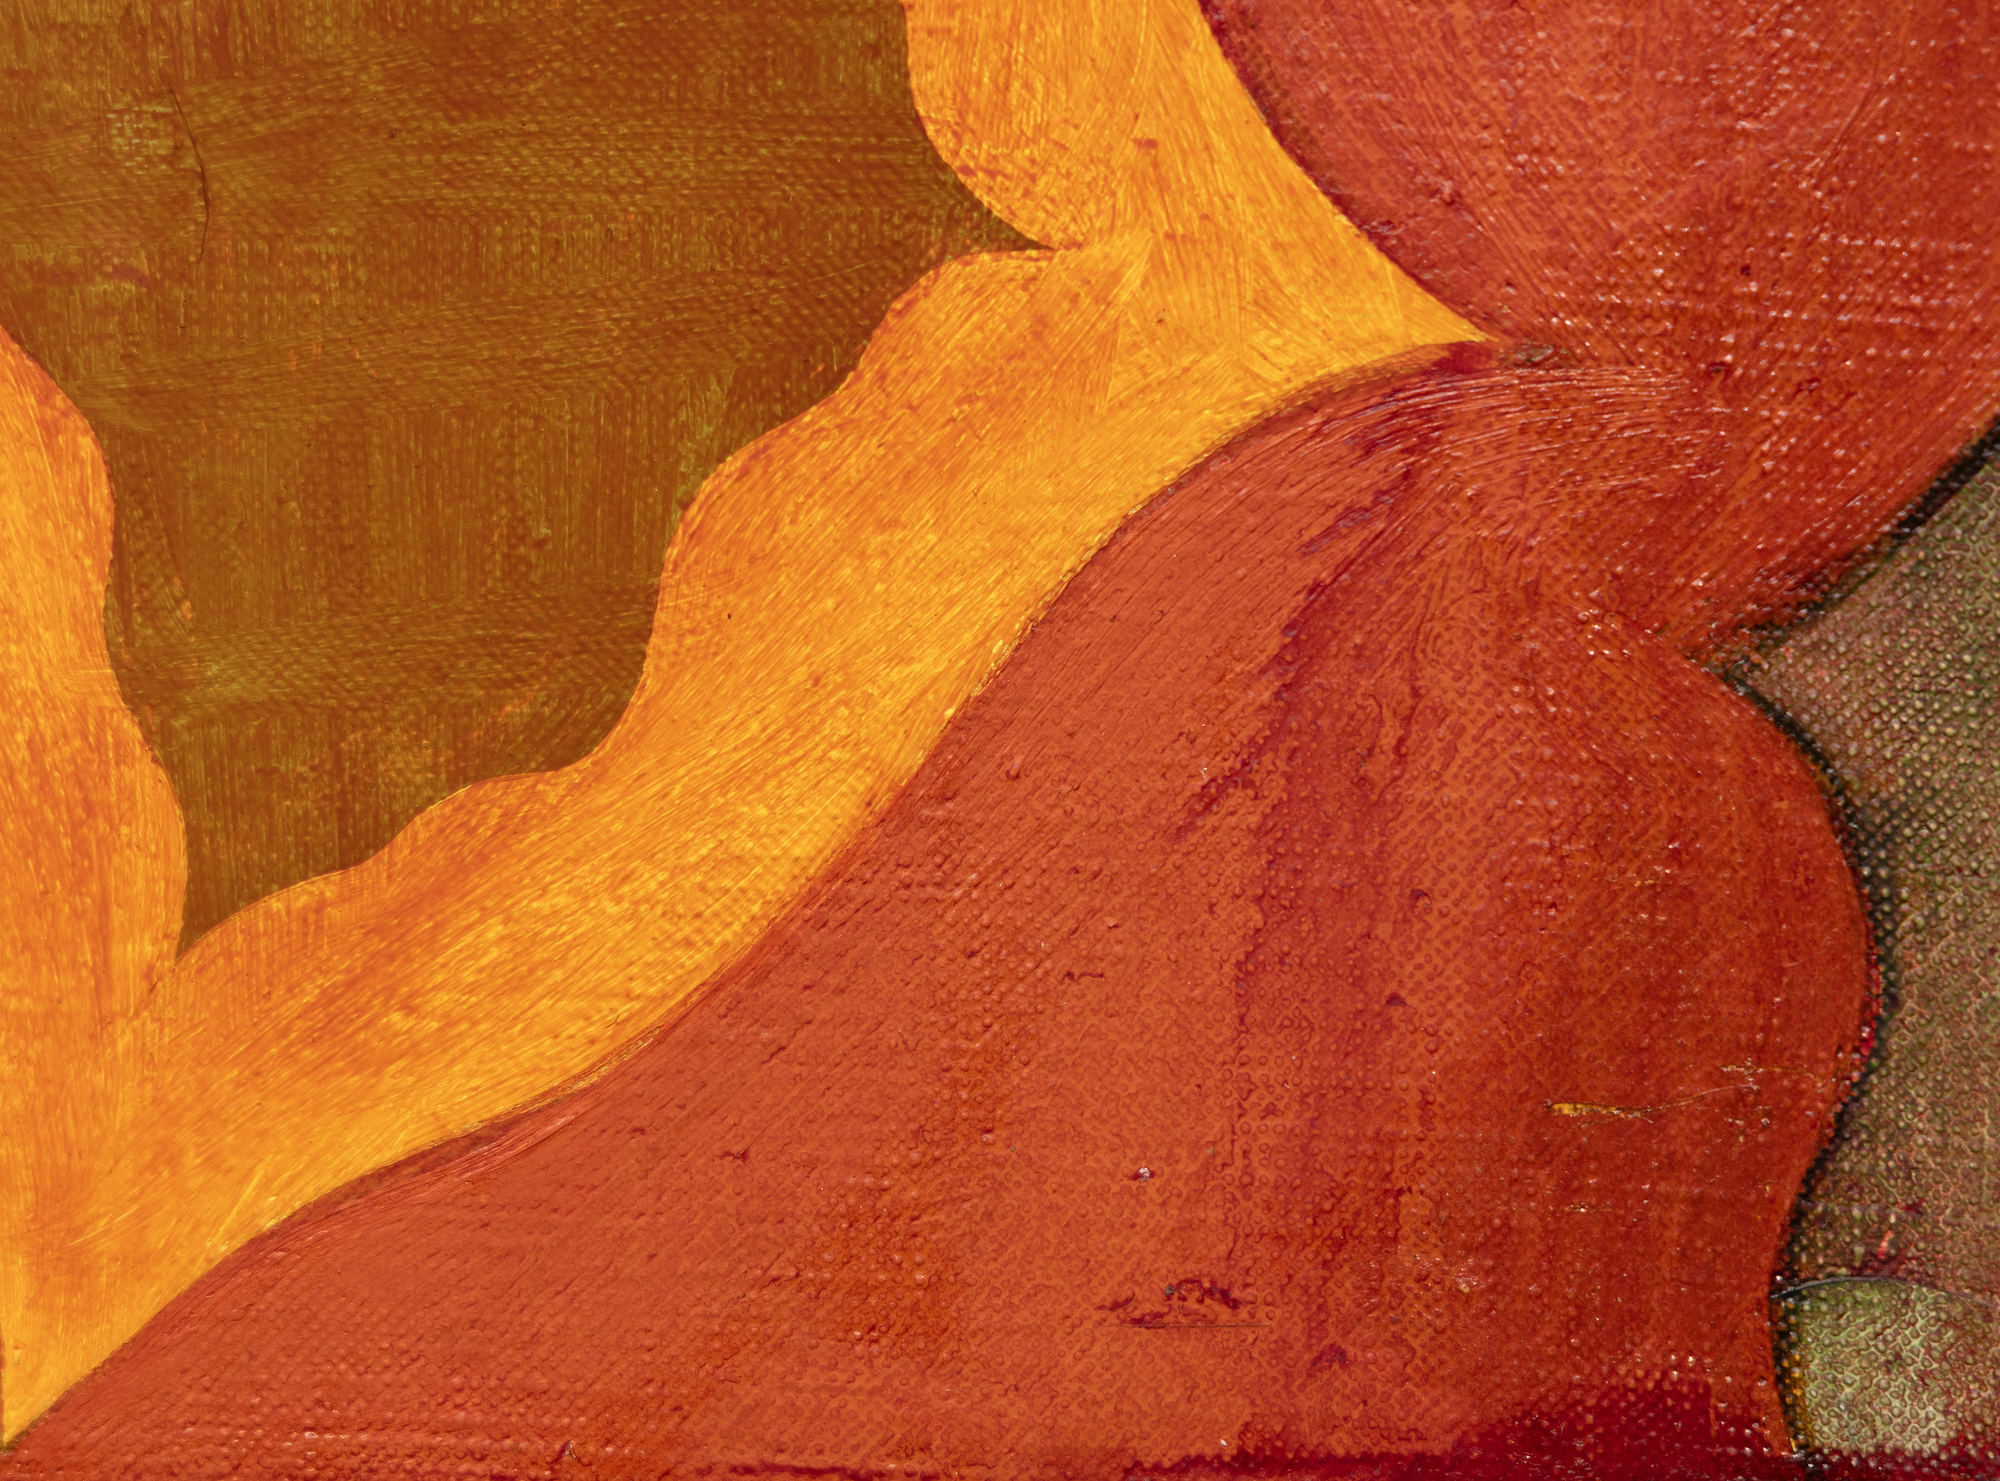 托马斯-诺兹科夫斯基出生于1944年，他创作了一些小幅的、色调丰富的画作，反映了抽象表现主义者和包豪斯难民的二元影响，他曾在库珀联盟学习。他使用小画笔，他的处理方式包括刮擦和擦掉颜料，这些都会在作品中得到体现。他开发了一个独特的，广泛的词汇，在不同的配色方案和广泛的联想中部署生物形态般的几何形式：瓷砖地板，细胞群，建筑和外太空。这些作品往往是从他自己的记忆和经验中提炼出来的。诺兹科夫斯基评论这幅具体的画作（《无题》，1994年）时说，这幅画反映了他对文艺复兴时期卡松多雷胸板上所画的神话场景的迷恋。他说这是这个系列三四幅15"x30"的画中最好的一幅。诺兹科夫斯基多年来一直由佩斯画廊处理。他于2019年去世。